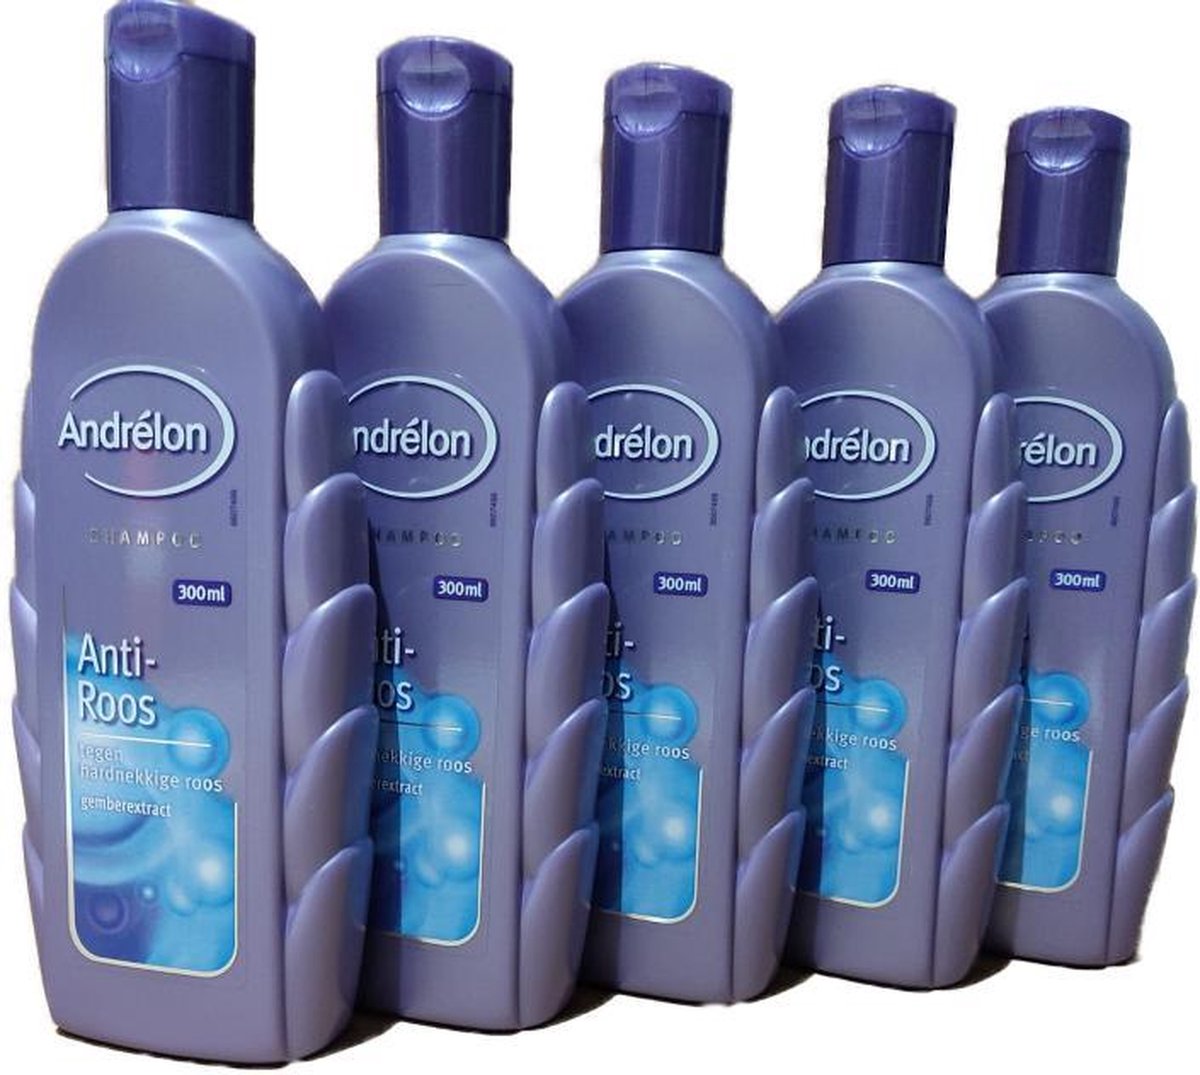 Andrélon shampoo - Anti-Roos - Voordeelverpakking (5 x 300 ml)